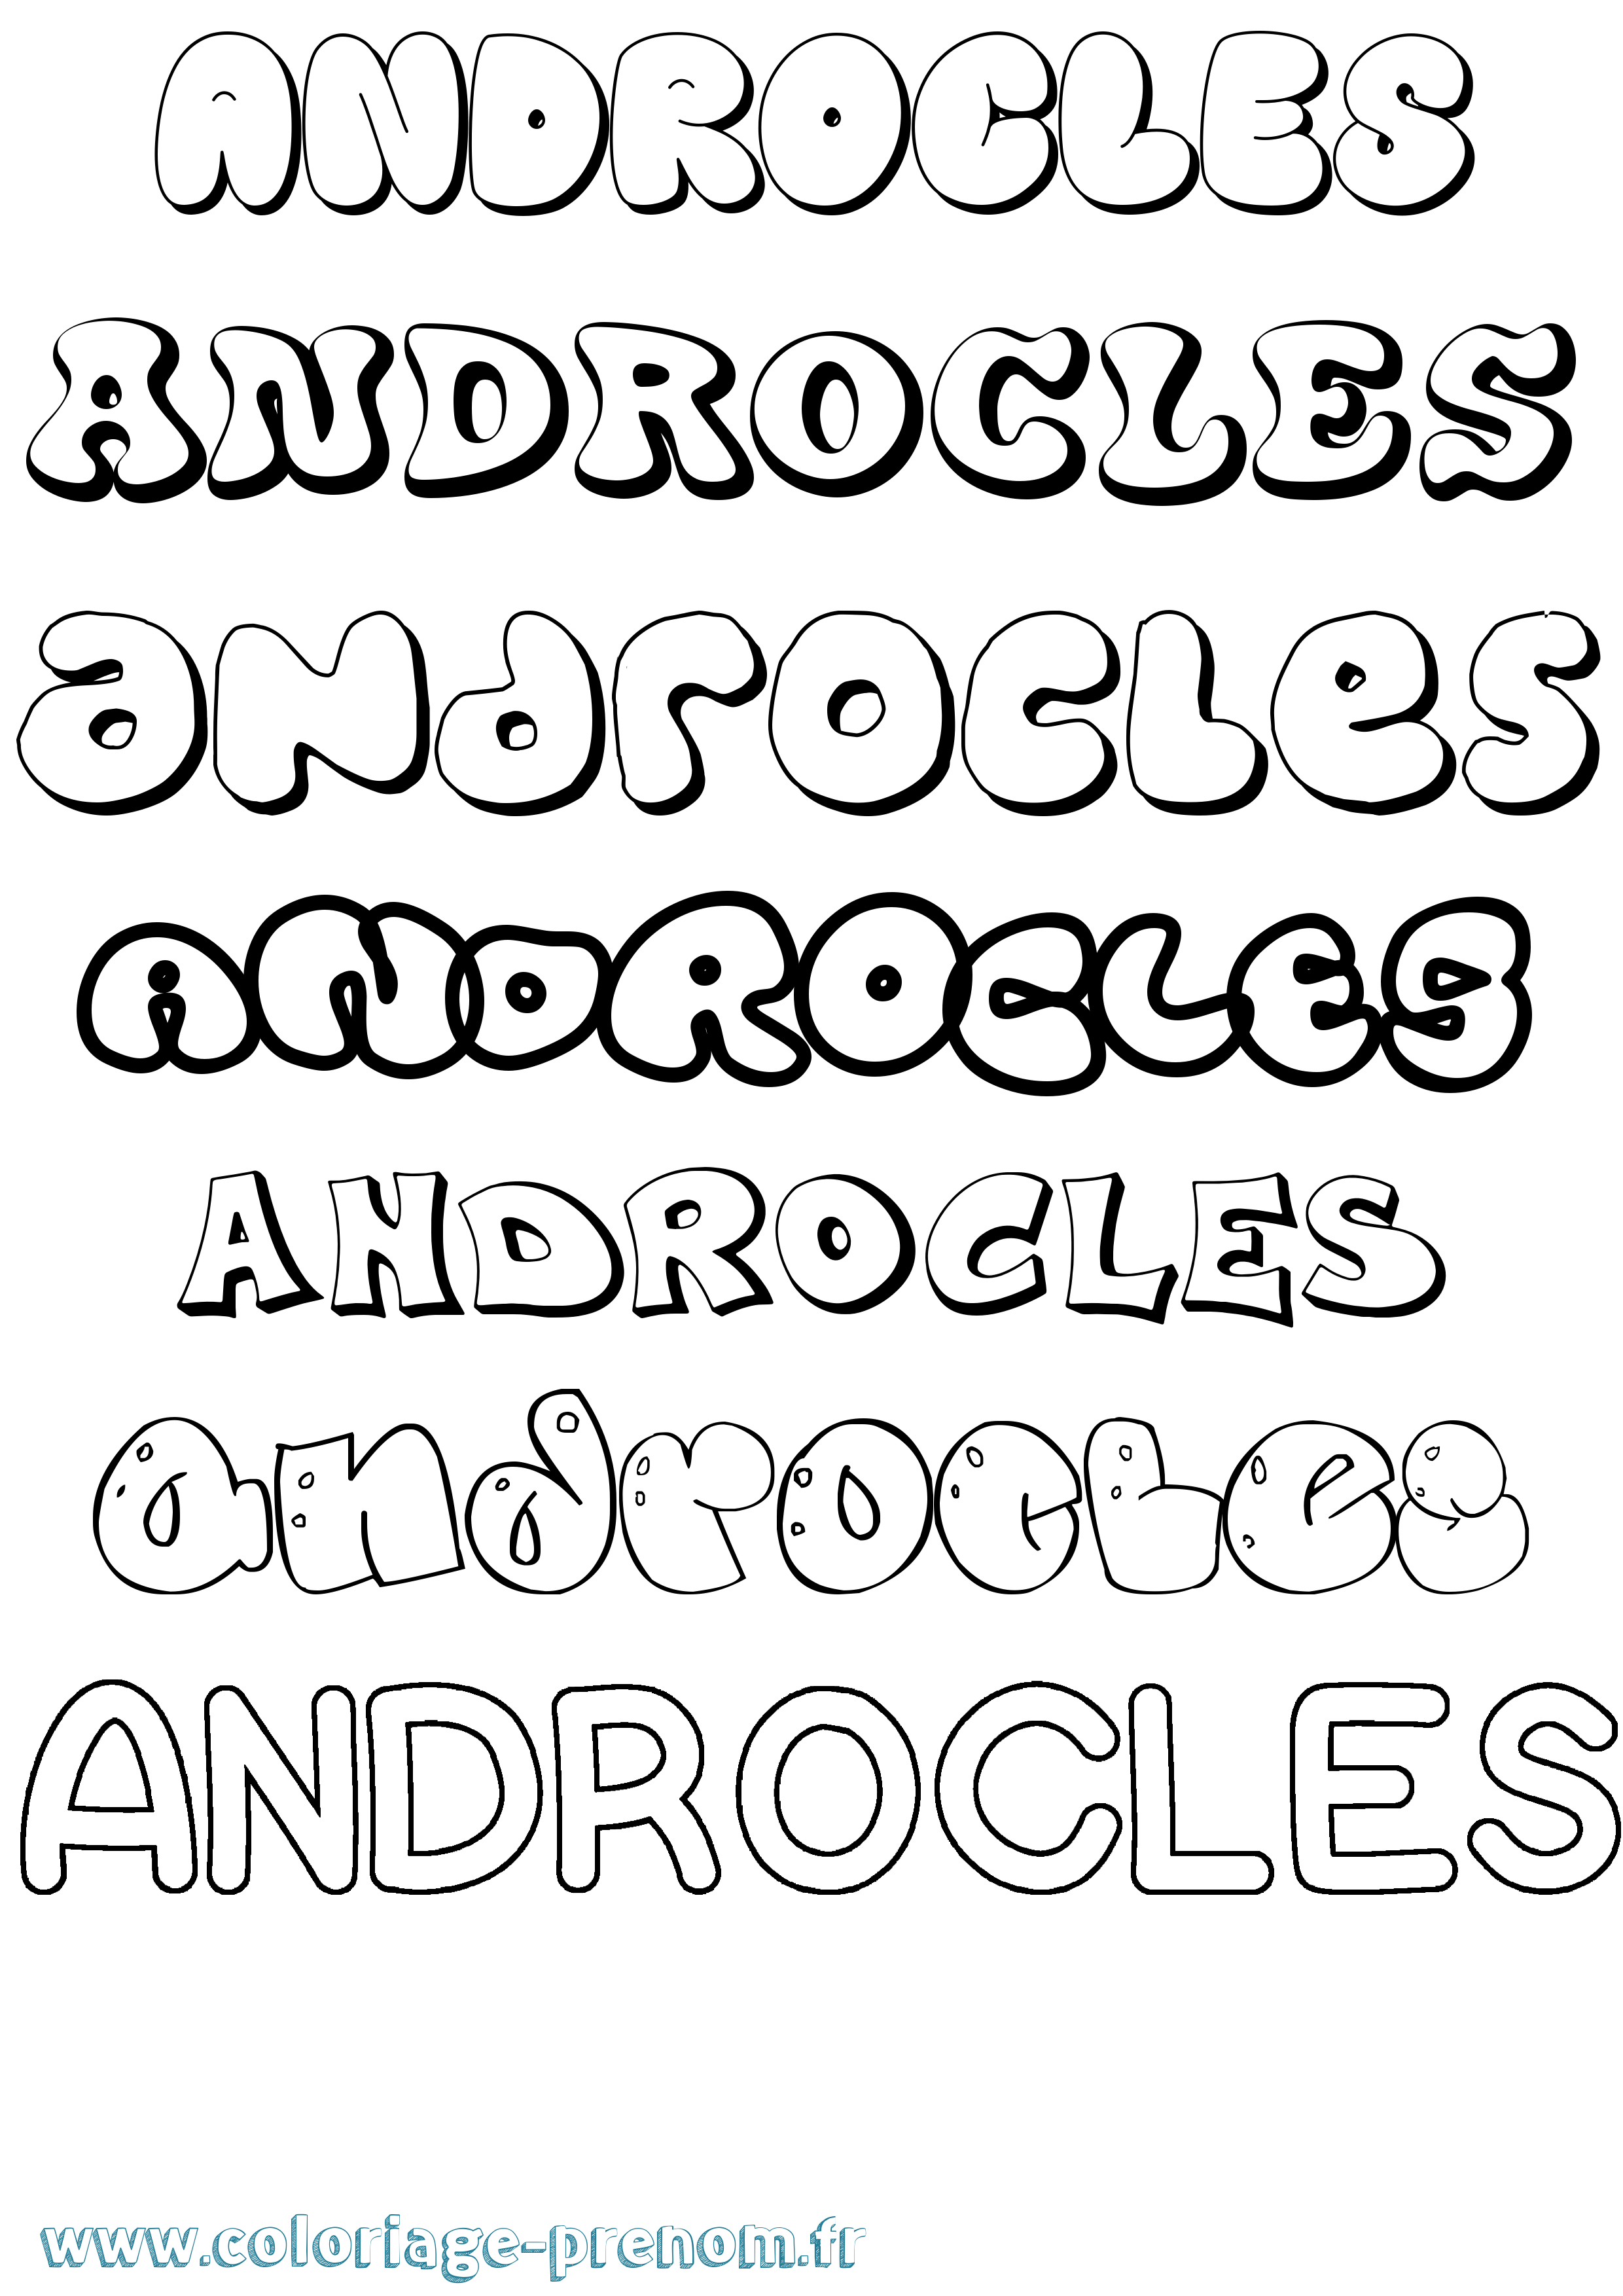 Coloriage prénom Androcles Bubble